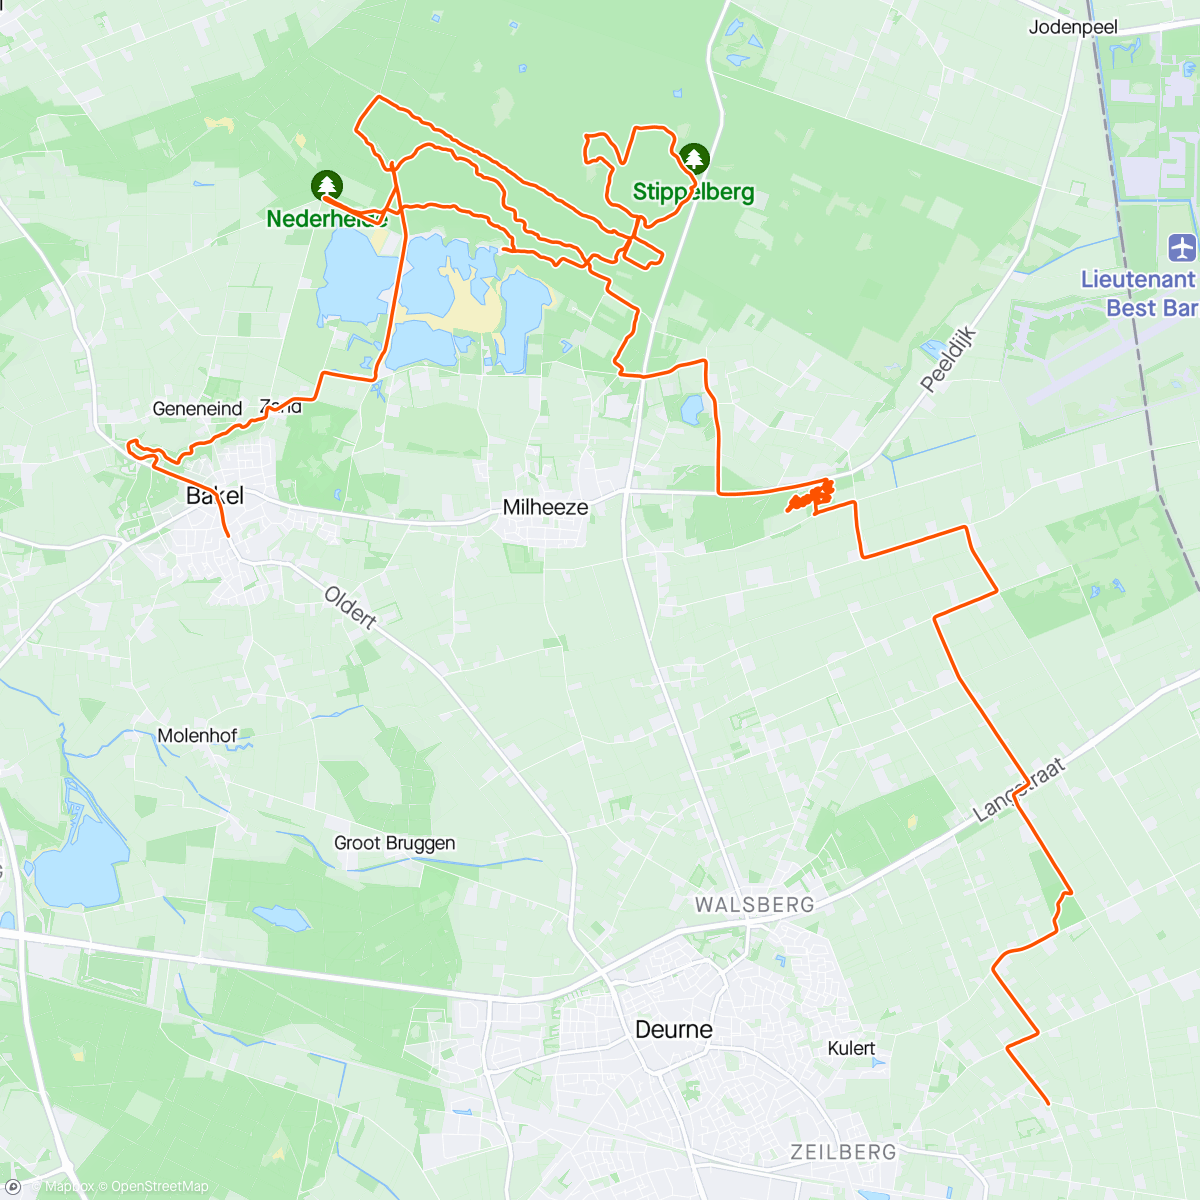 Map of the activity, Spelen in de stippelberg